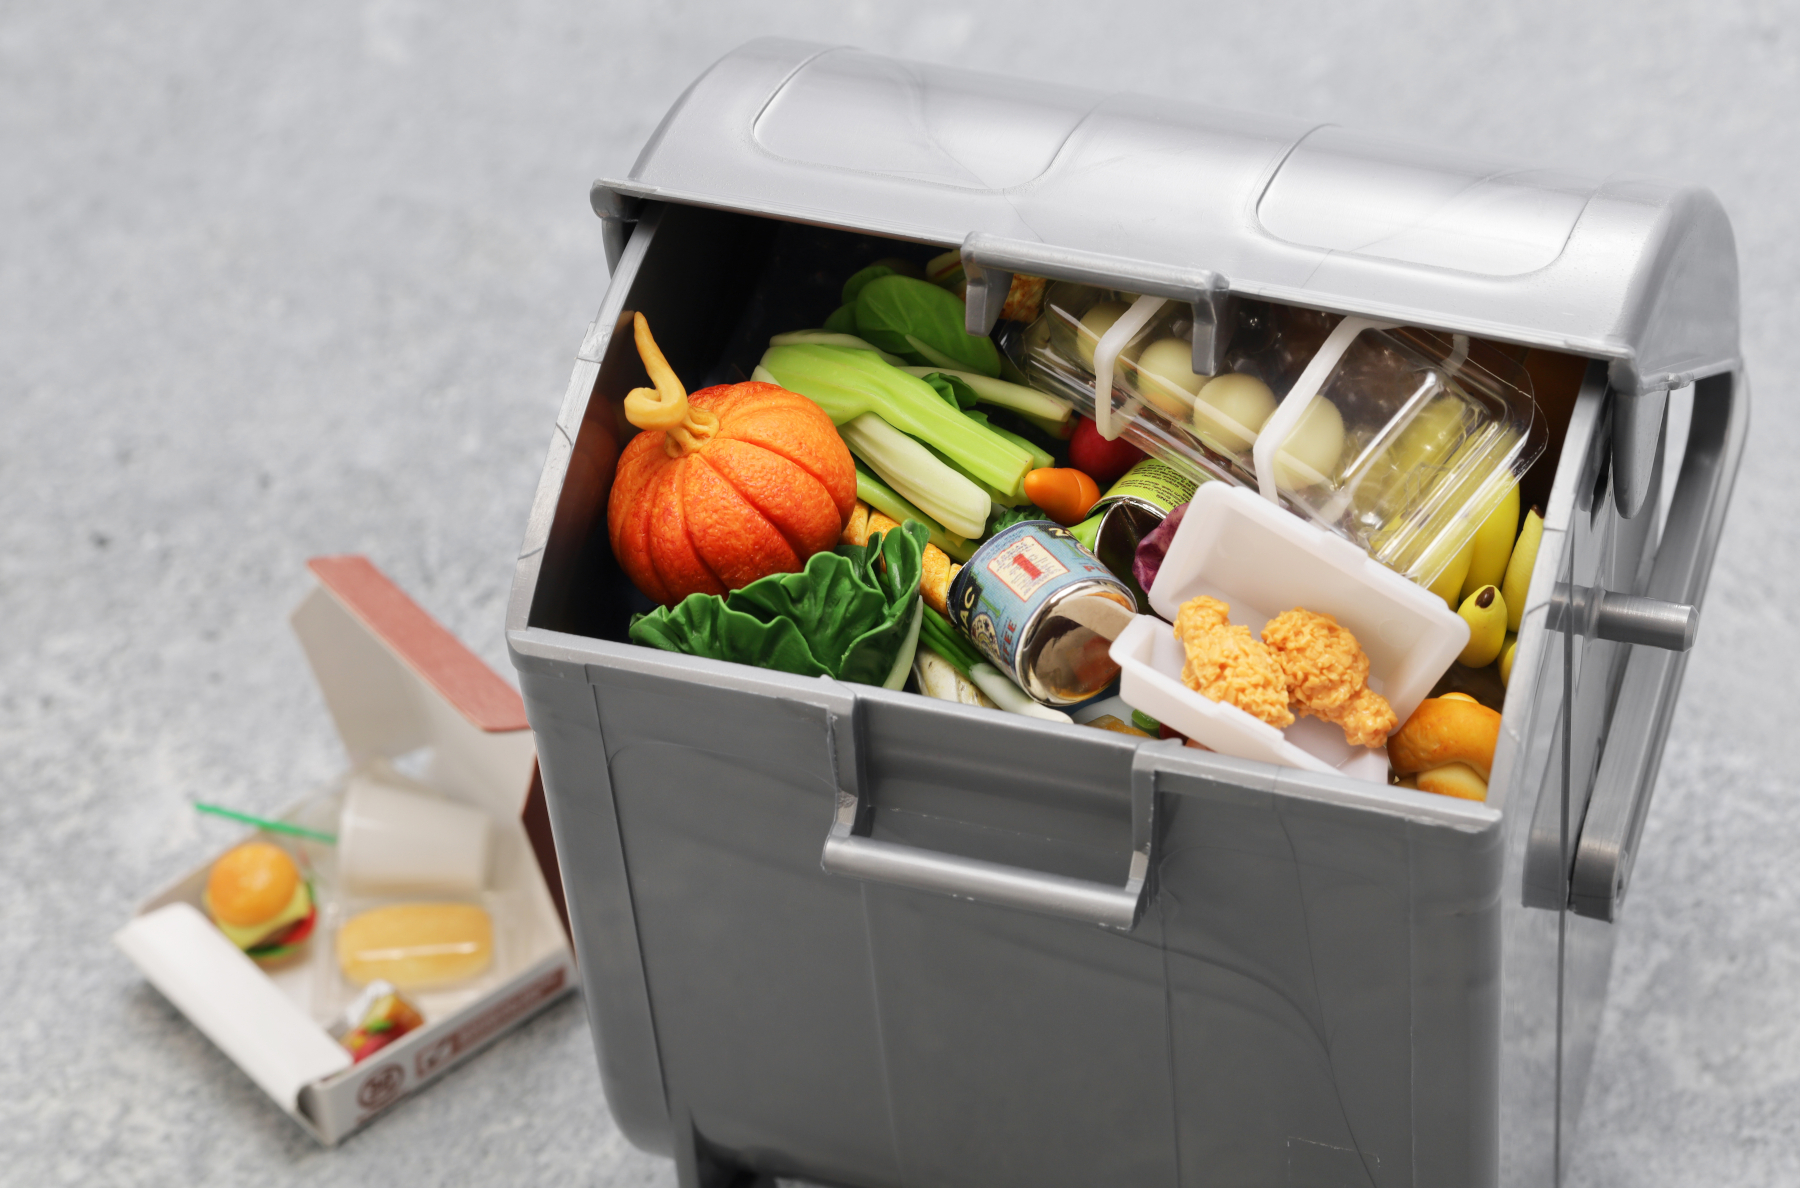 大量の食品がごみ箱に捨てられているミニチュア模型